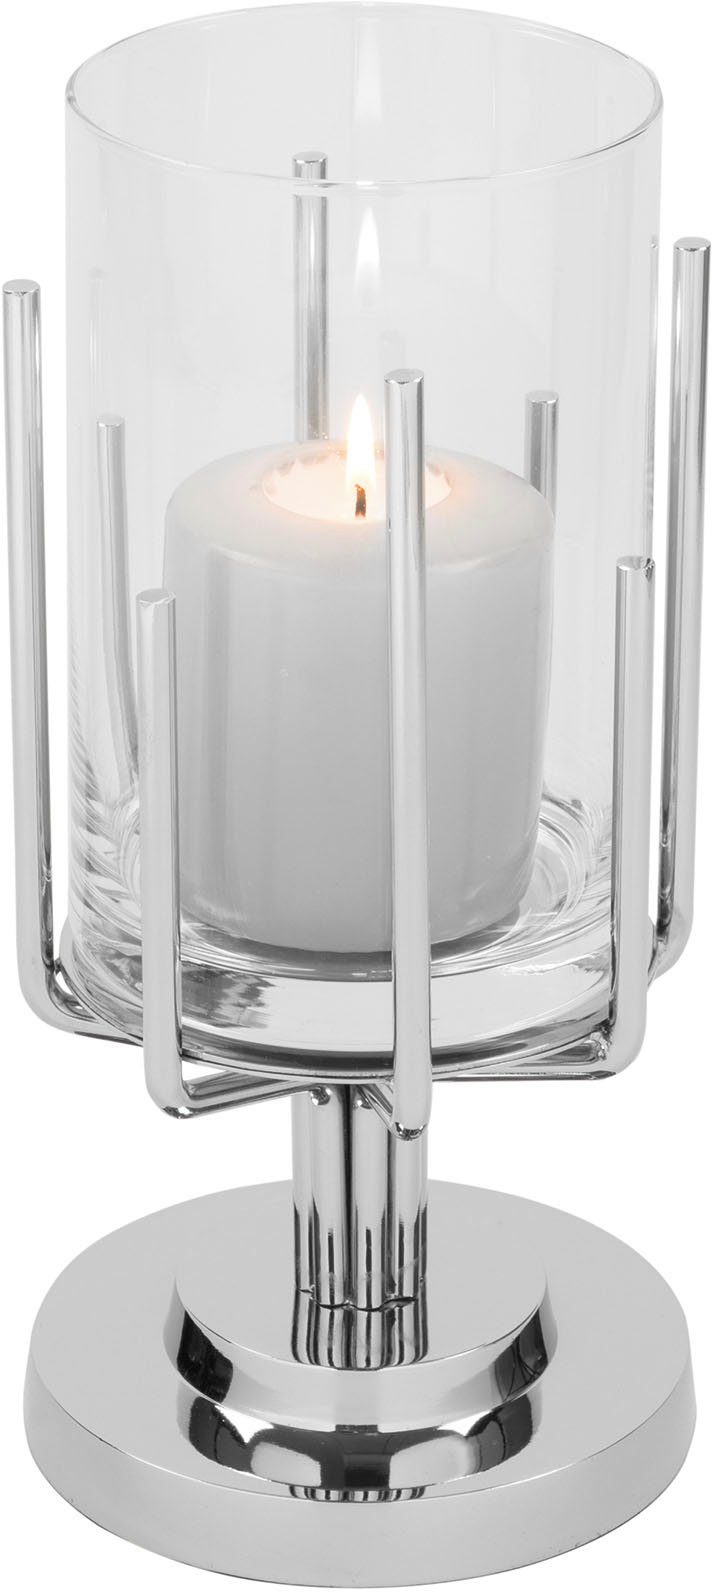 Fink Windlicht LUXOR (1 und Aluminium, Edelstahl St), Silberfarben - Glas aus